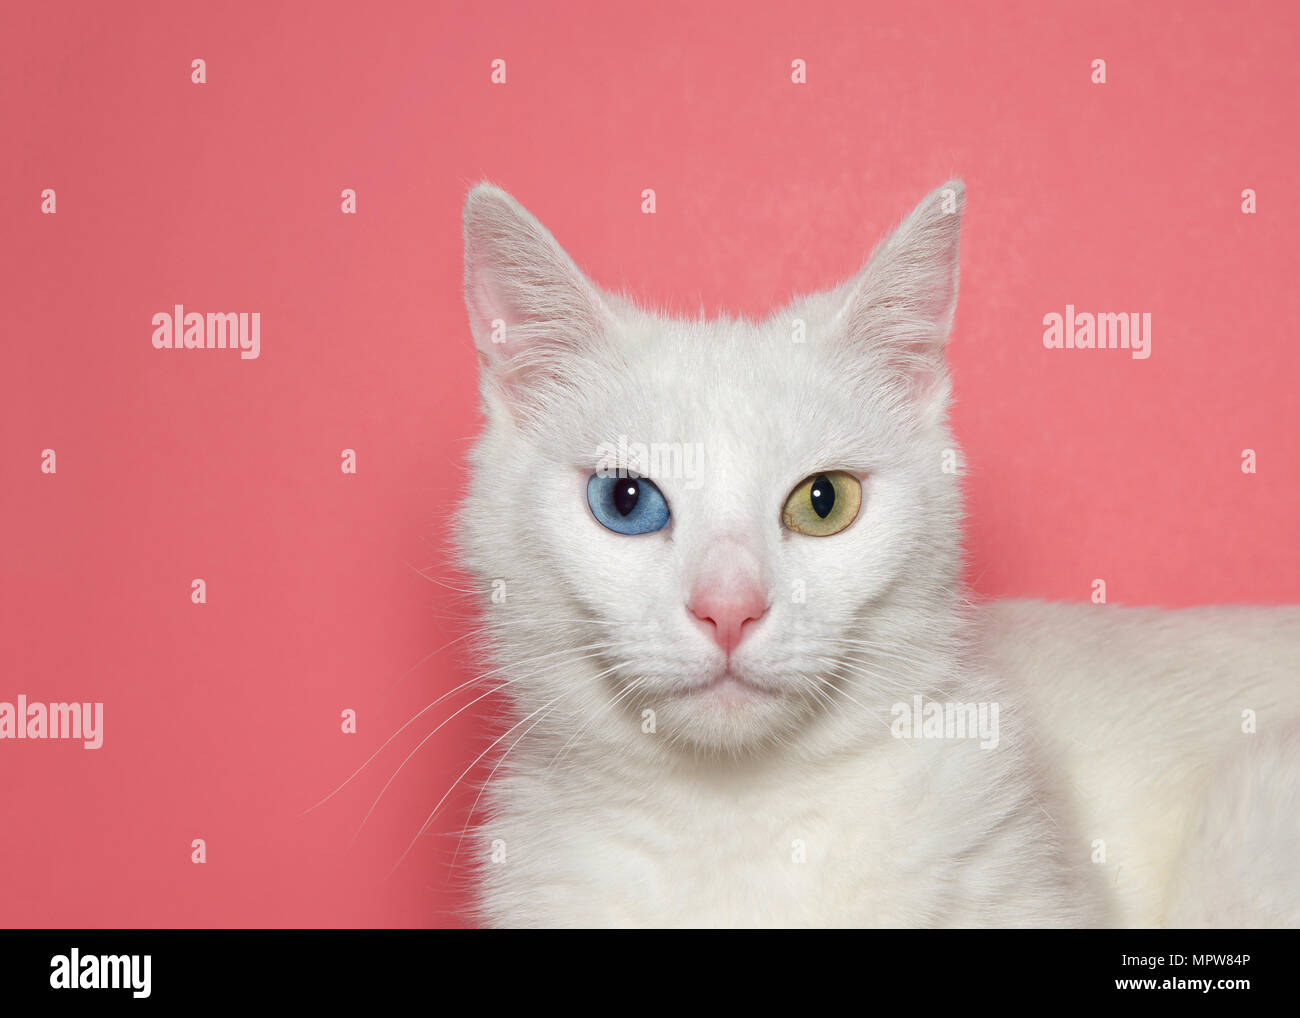 Nahaufnahme, Porträt einer Medium Haare weiße Katze mit Heterochromia oder odd-eyed. Ein blaues Auge ein gelb grün. Rosa Hintergrund mit kopieren. Stockfoto